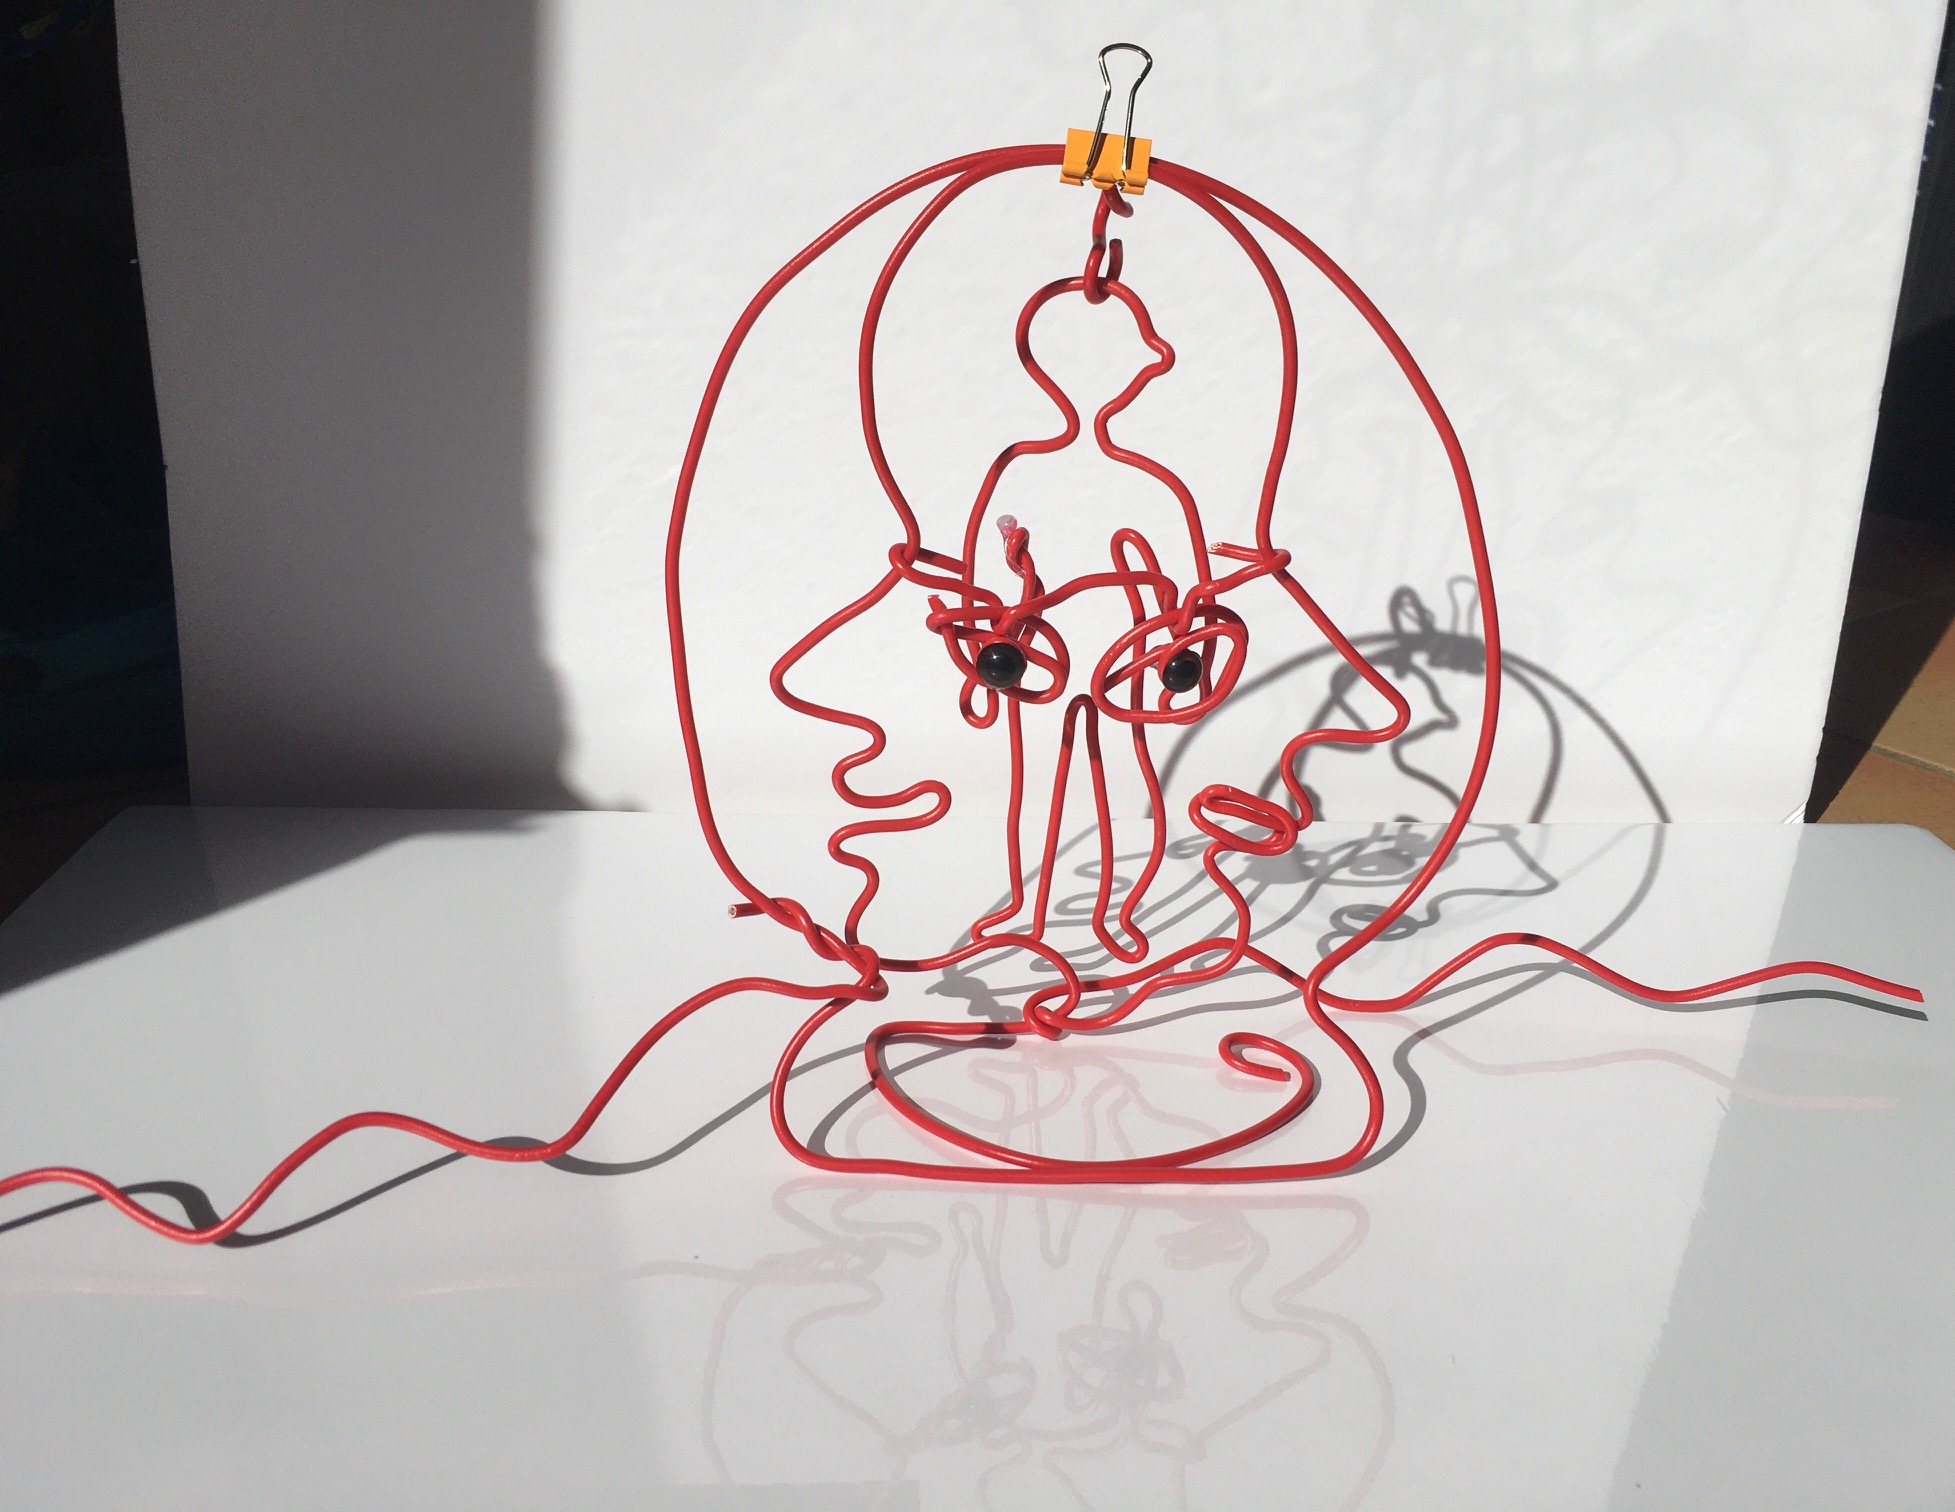 En fil de fer rouge, adaptation tactile de l'autoportrait de Louise Bourgeois (silhouette d'une personne superposée sur un visage)